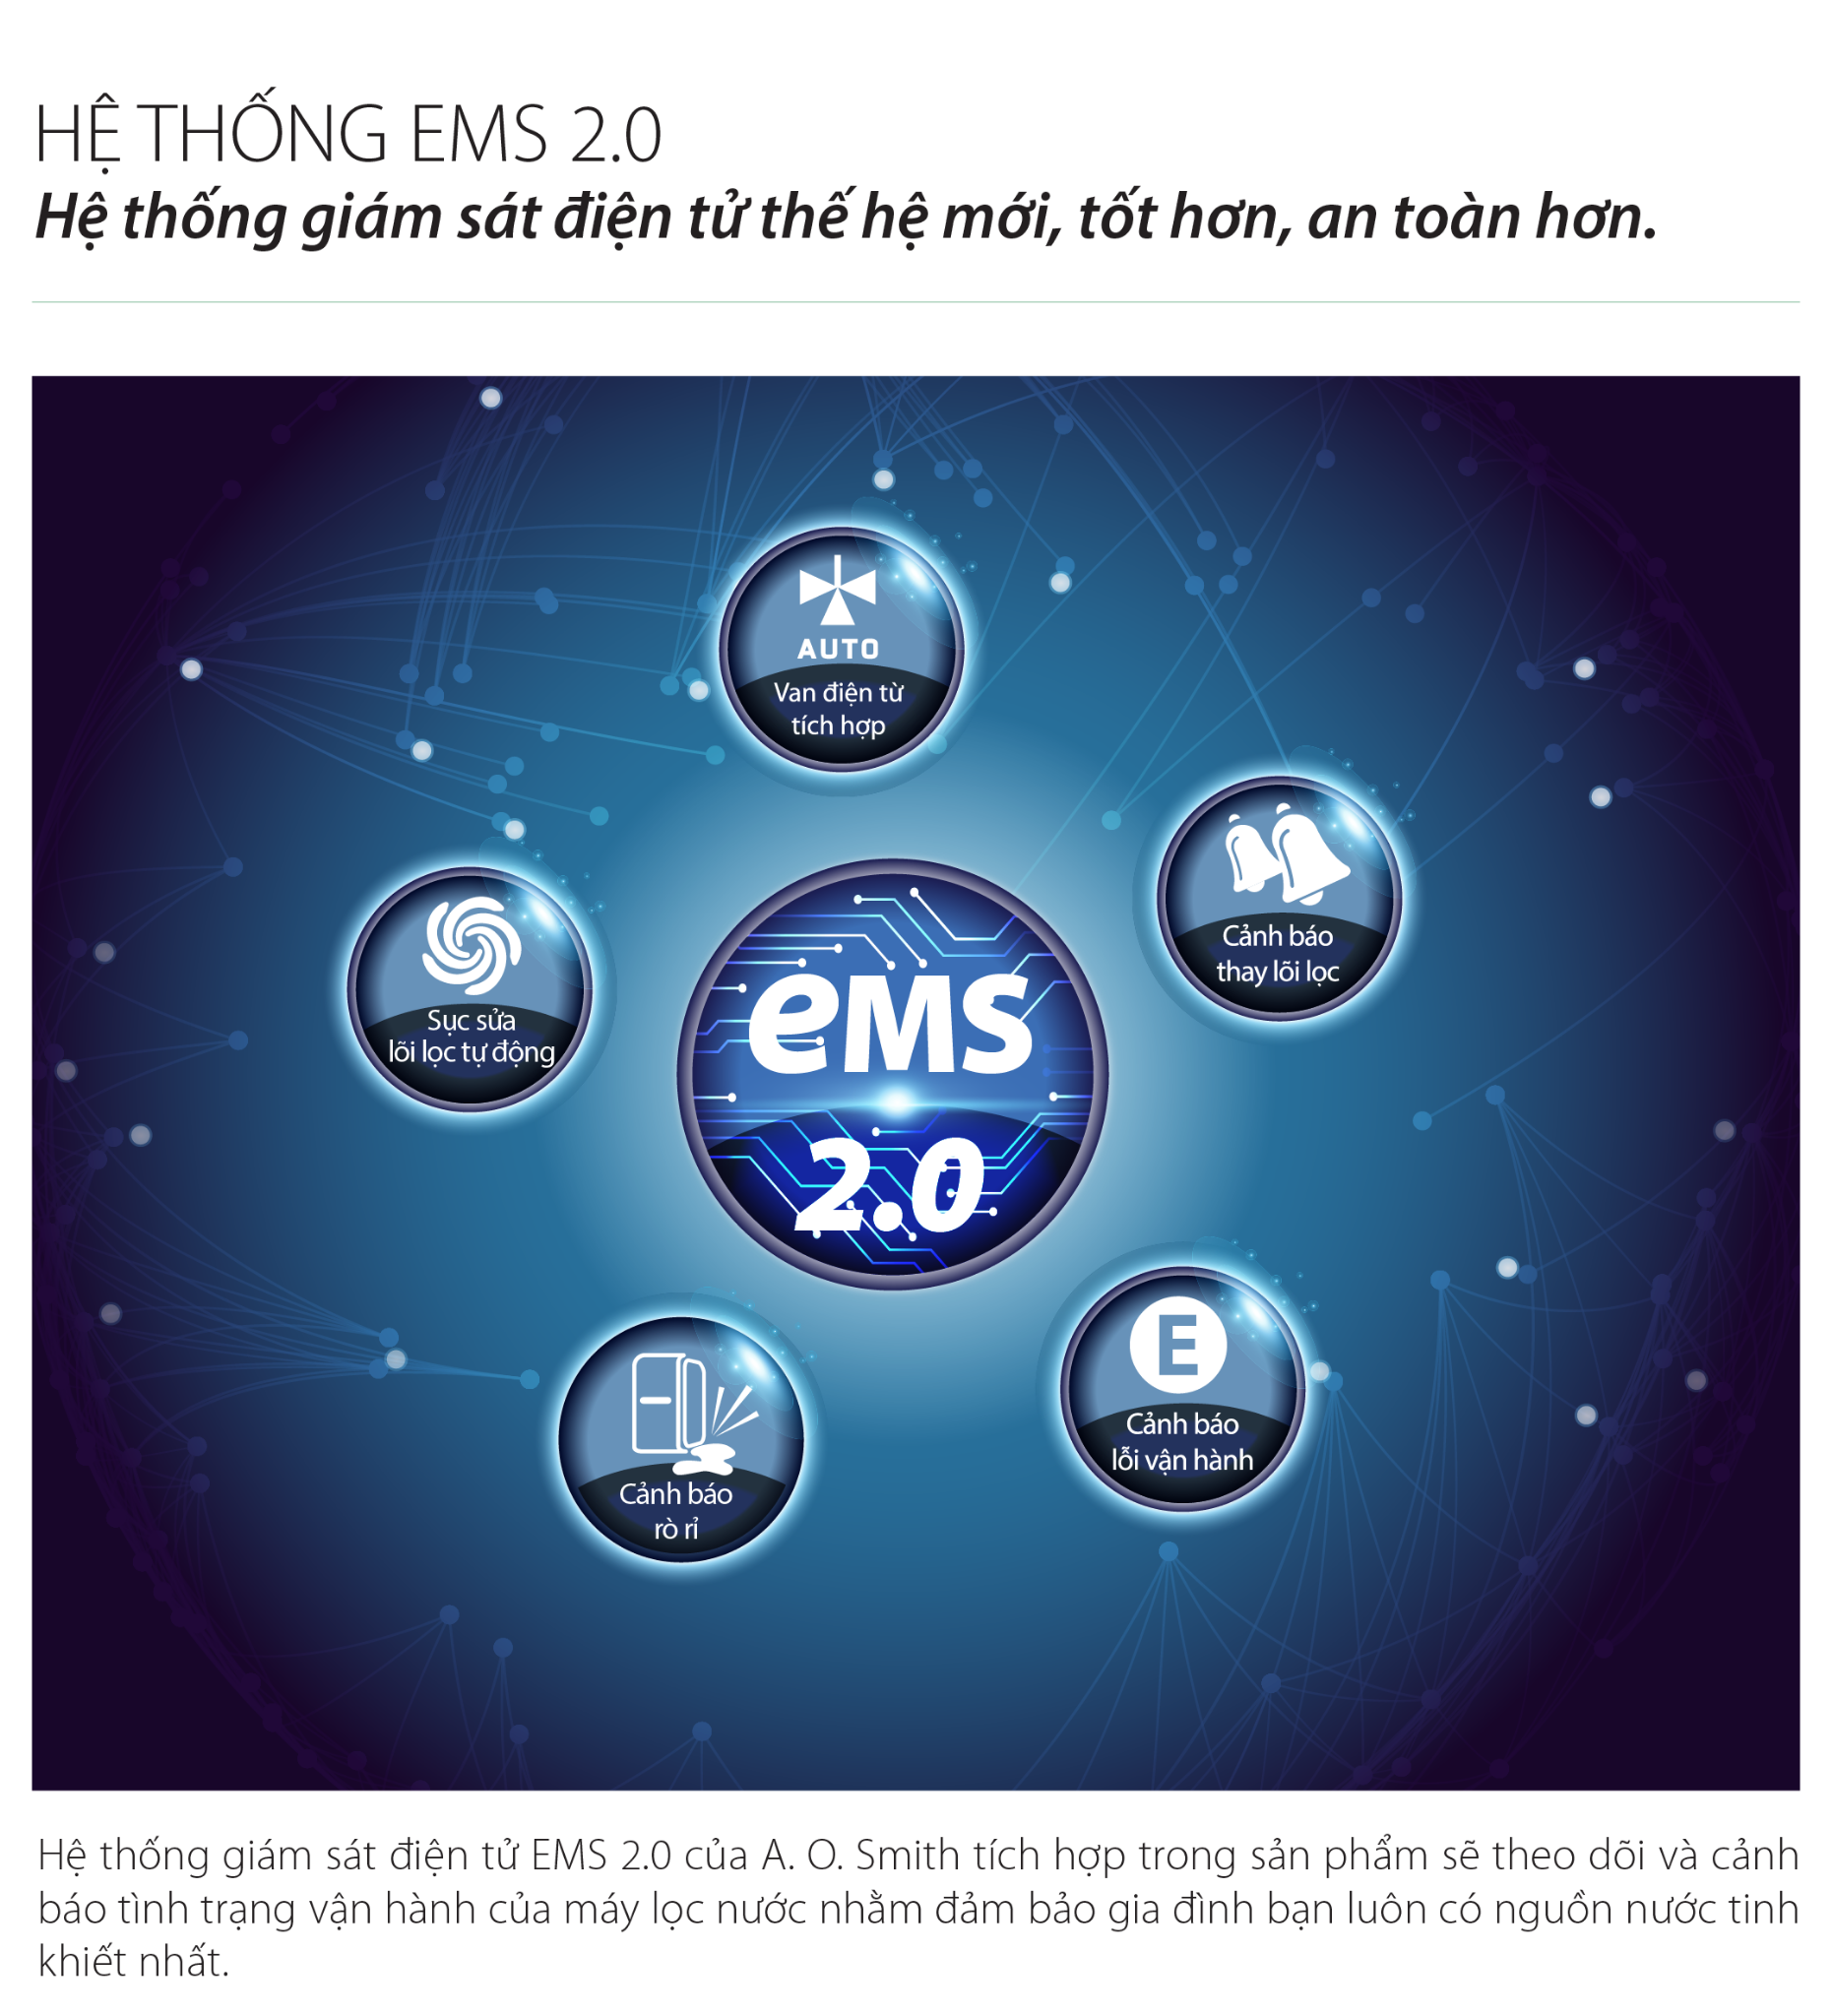 Hệ thống kiểm sát điện tử EMS 2.0 của A. O. Smith G2